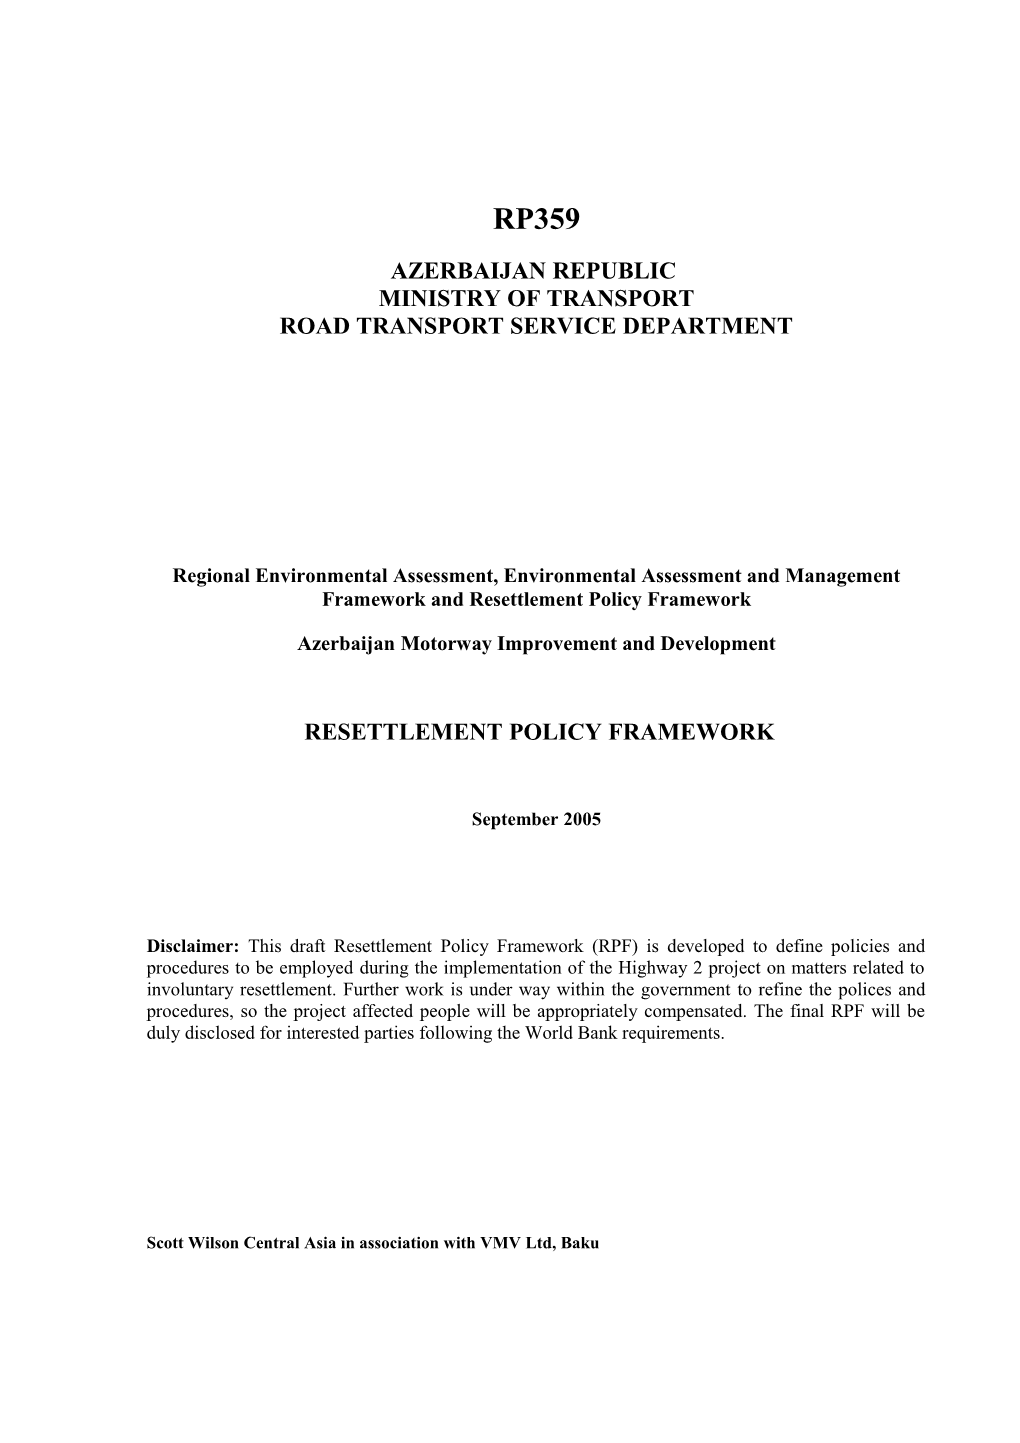 Regional Environmental Assessment, Environmental Assessment & Management RPF Report Framework